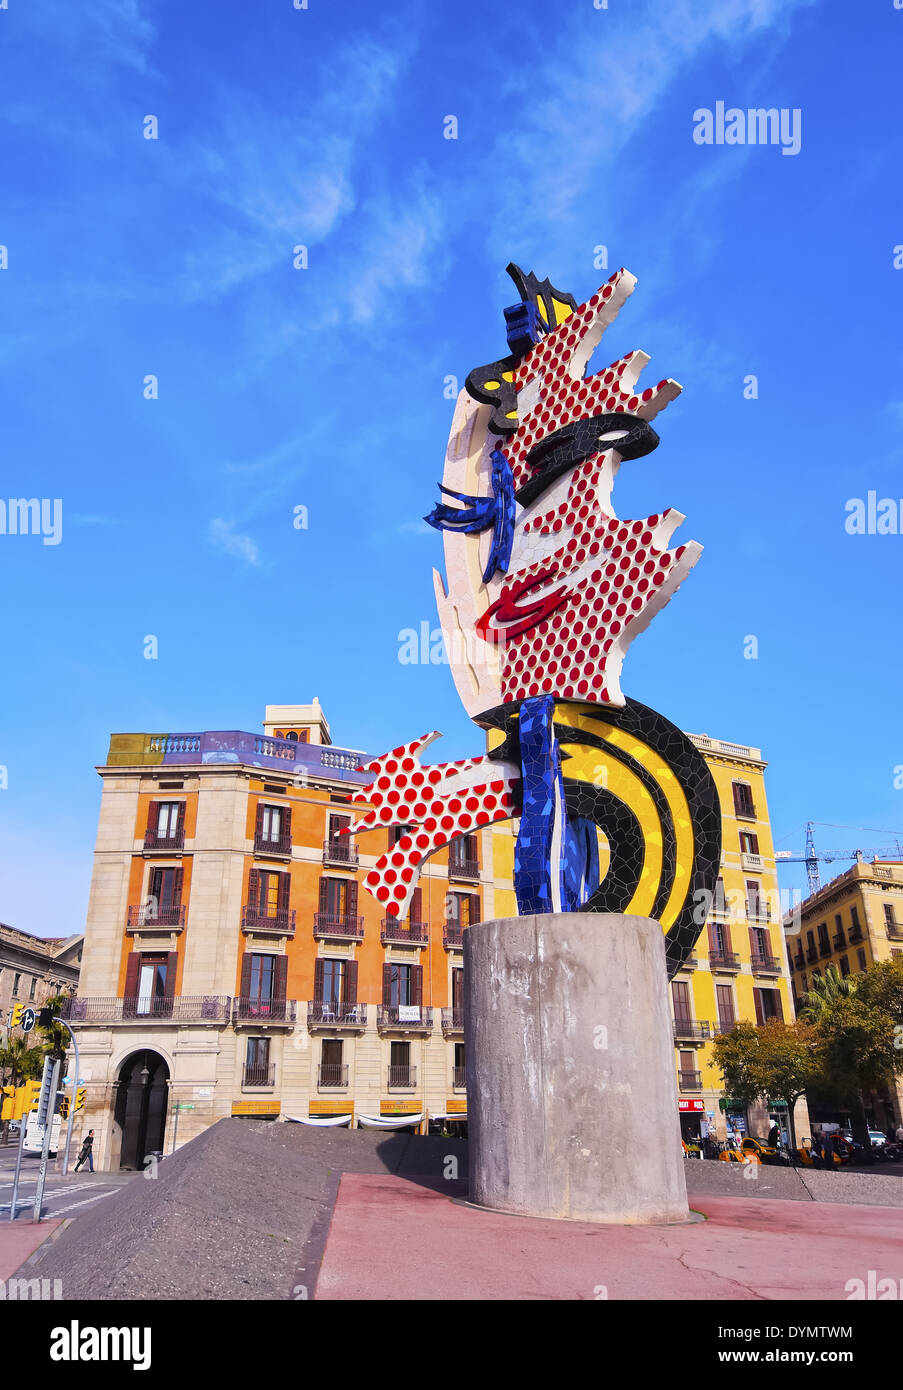 El Cap de Barcelone - une sculpture surréaliste créé par l'artiste pop américain Roy Lichtenstein pour les Jeux Olympiques d'été de 1992 à Banque D'Images